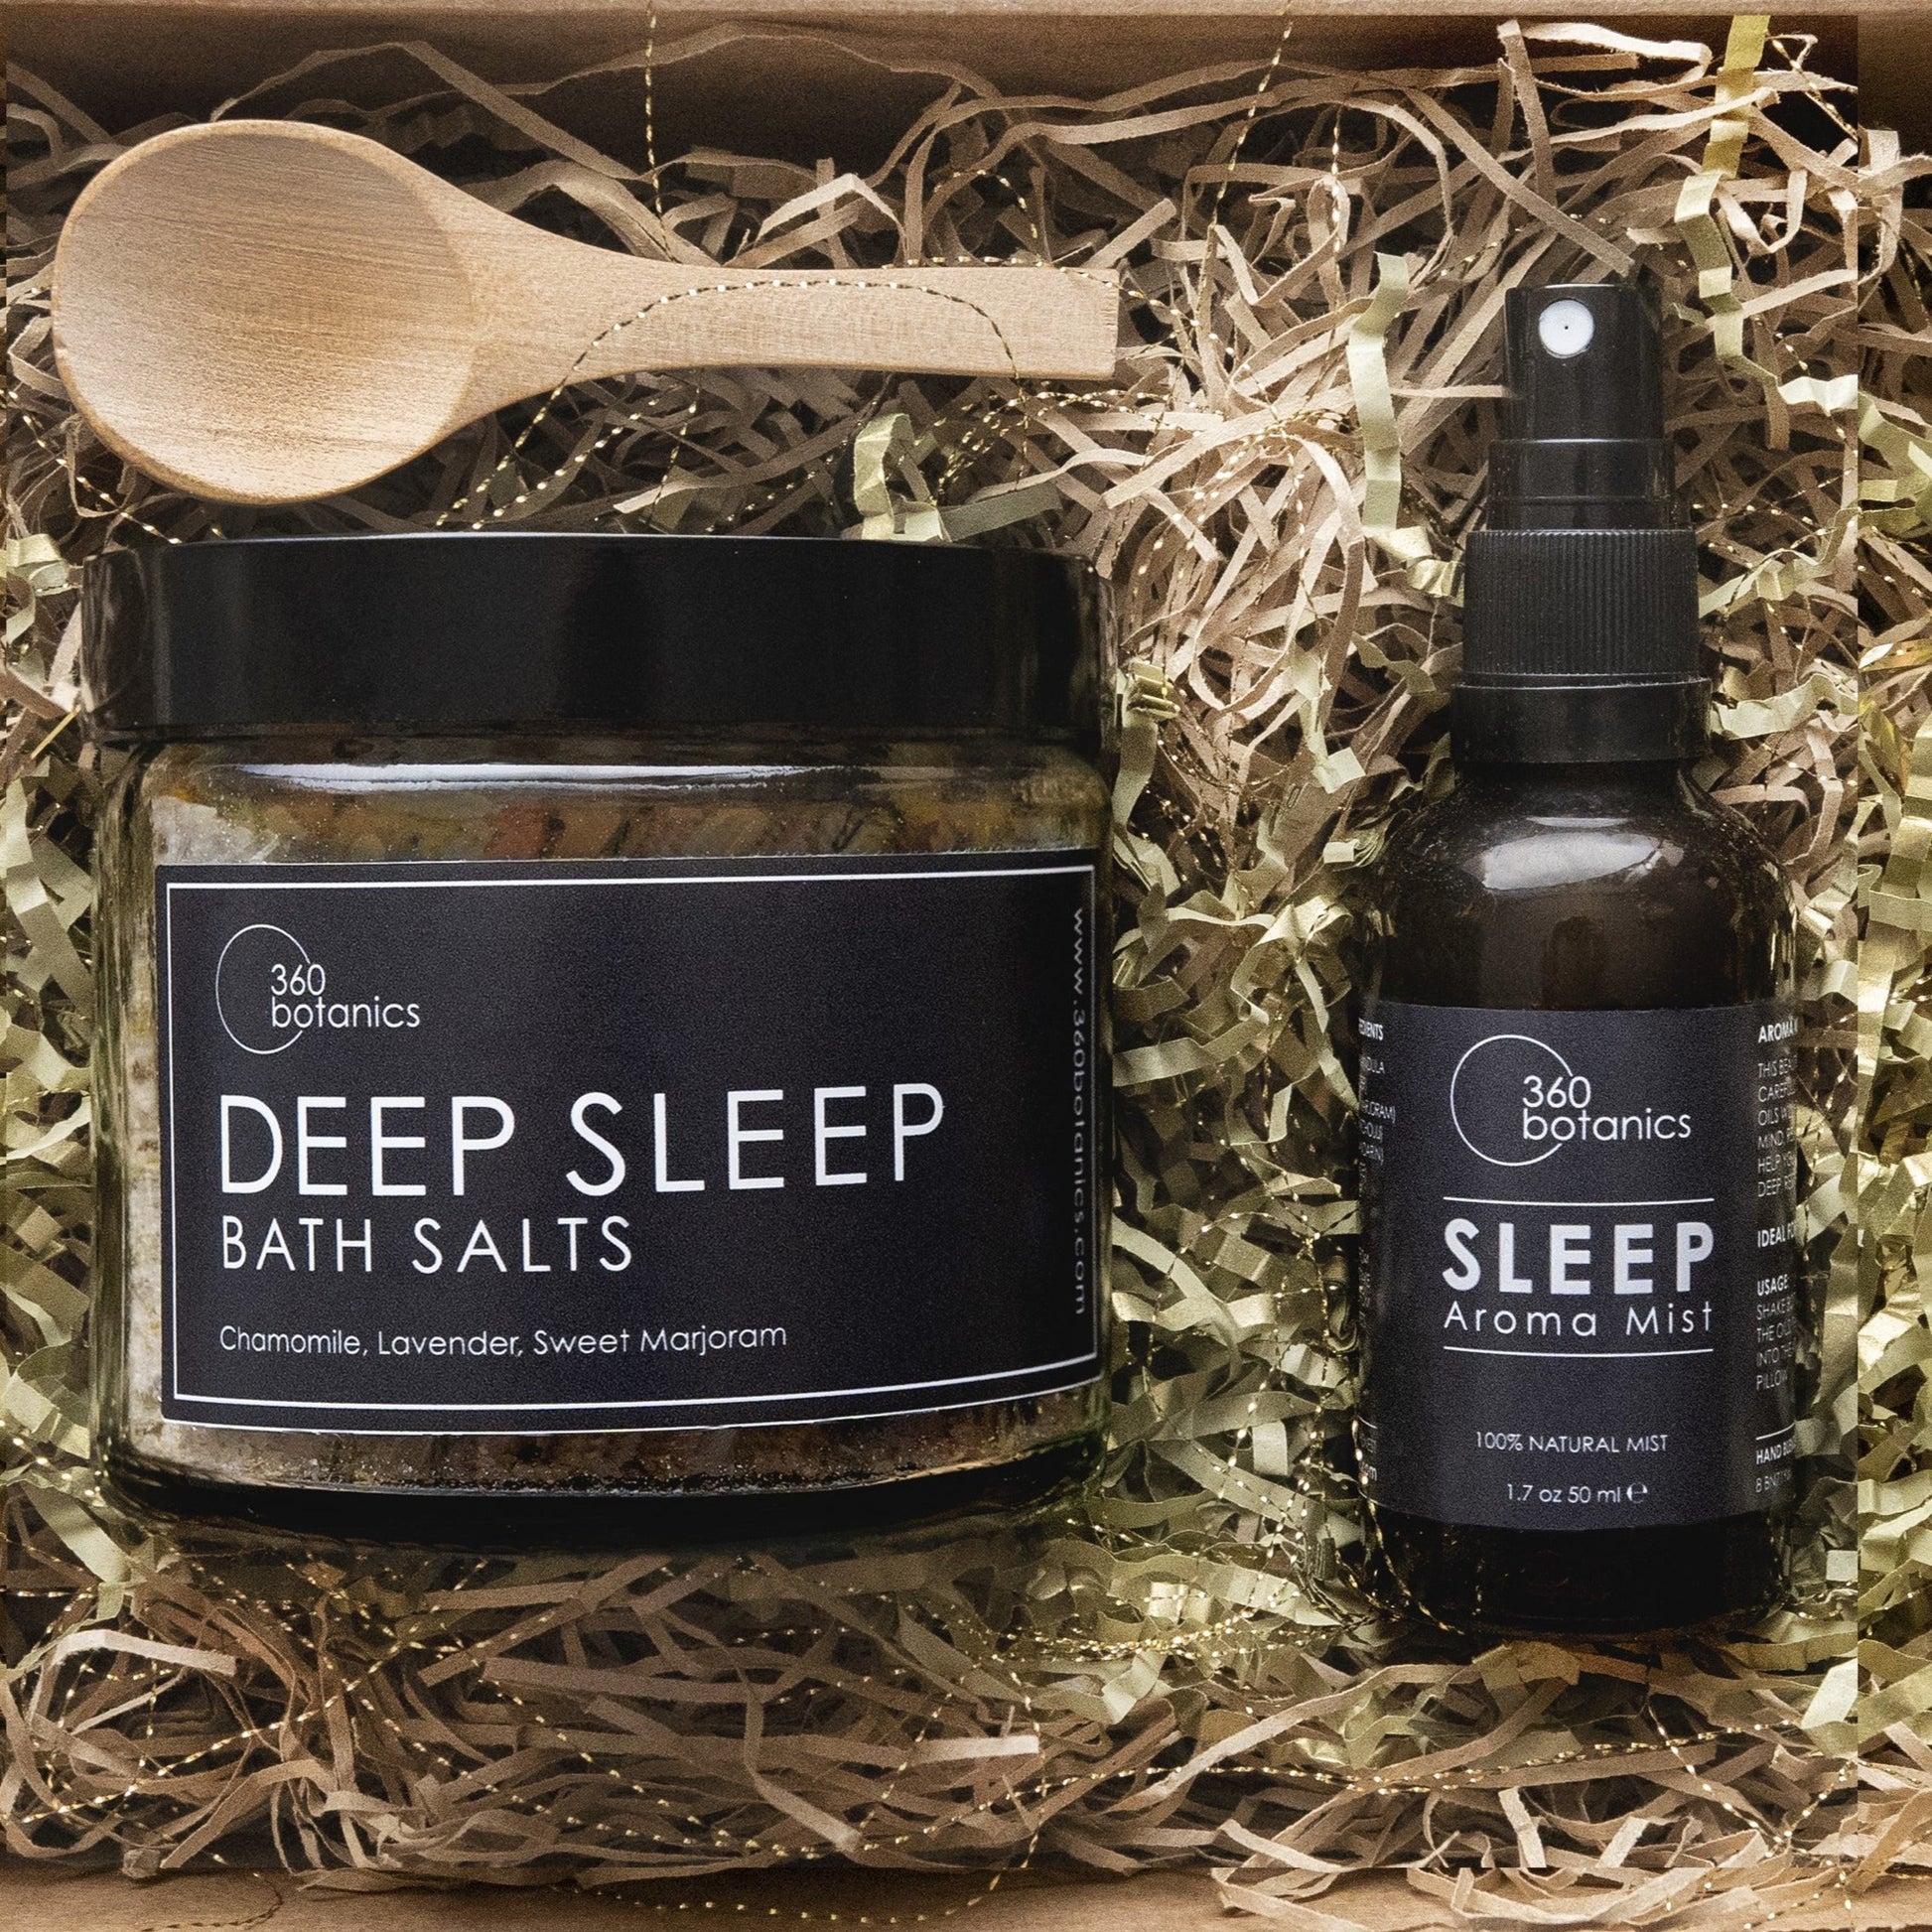 360botanics Deep Sleep cardboard Gift-Box contains deep sleep bath salts, Sleep aroma room spray and wooden spoon